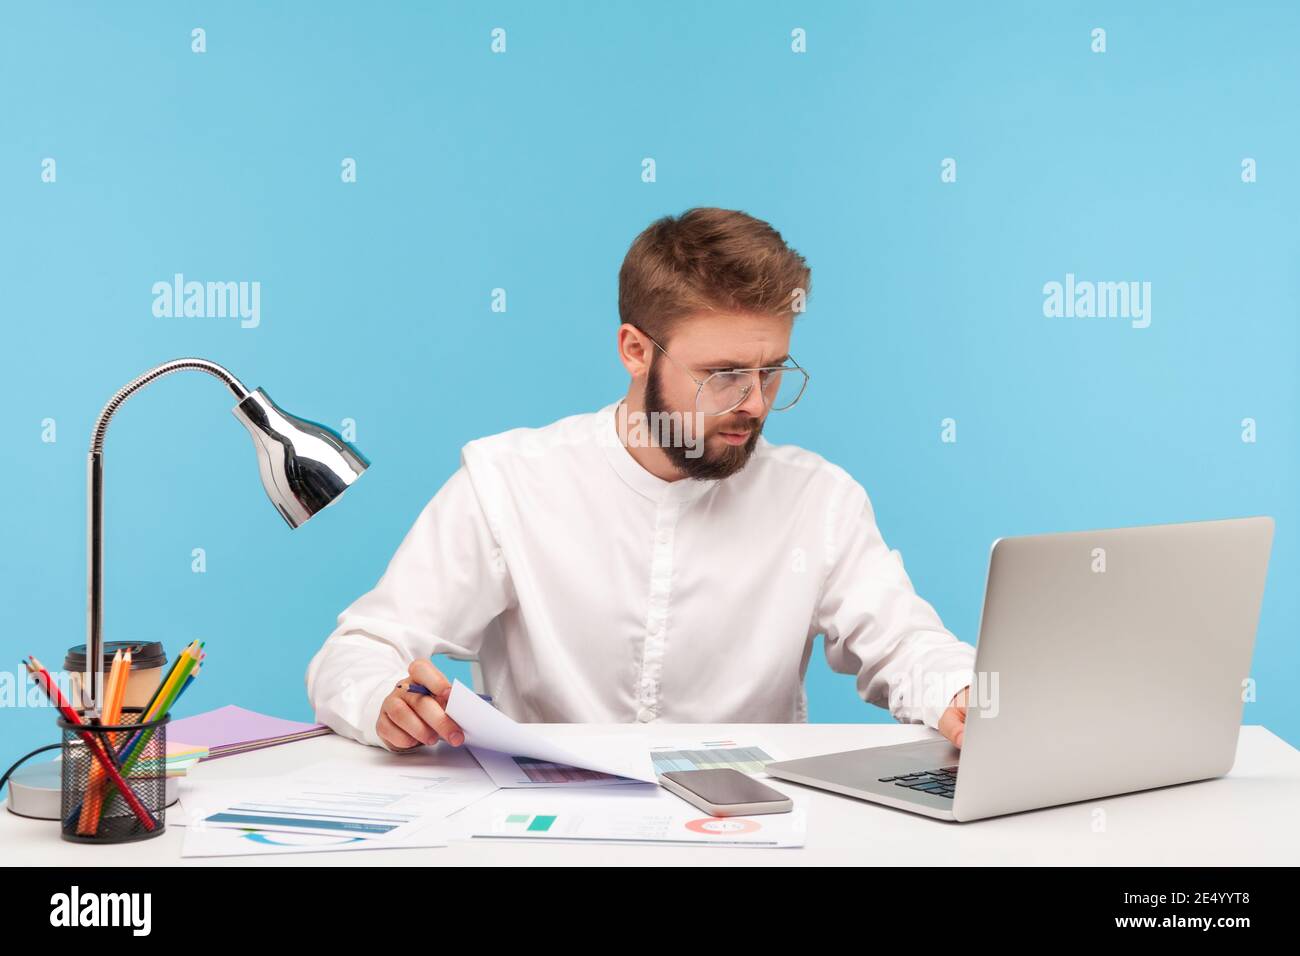 Analista uomo concentrato in occhiali e camicia bianca che controlla i dati sui grafici, inserendo i risultati al programma del laptop, seduto sul posto di lavoro. Prigioniero interno Foto Stock